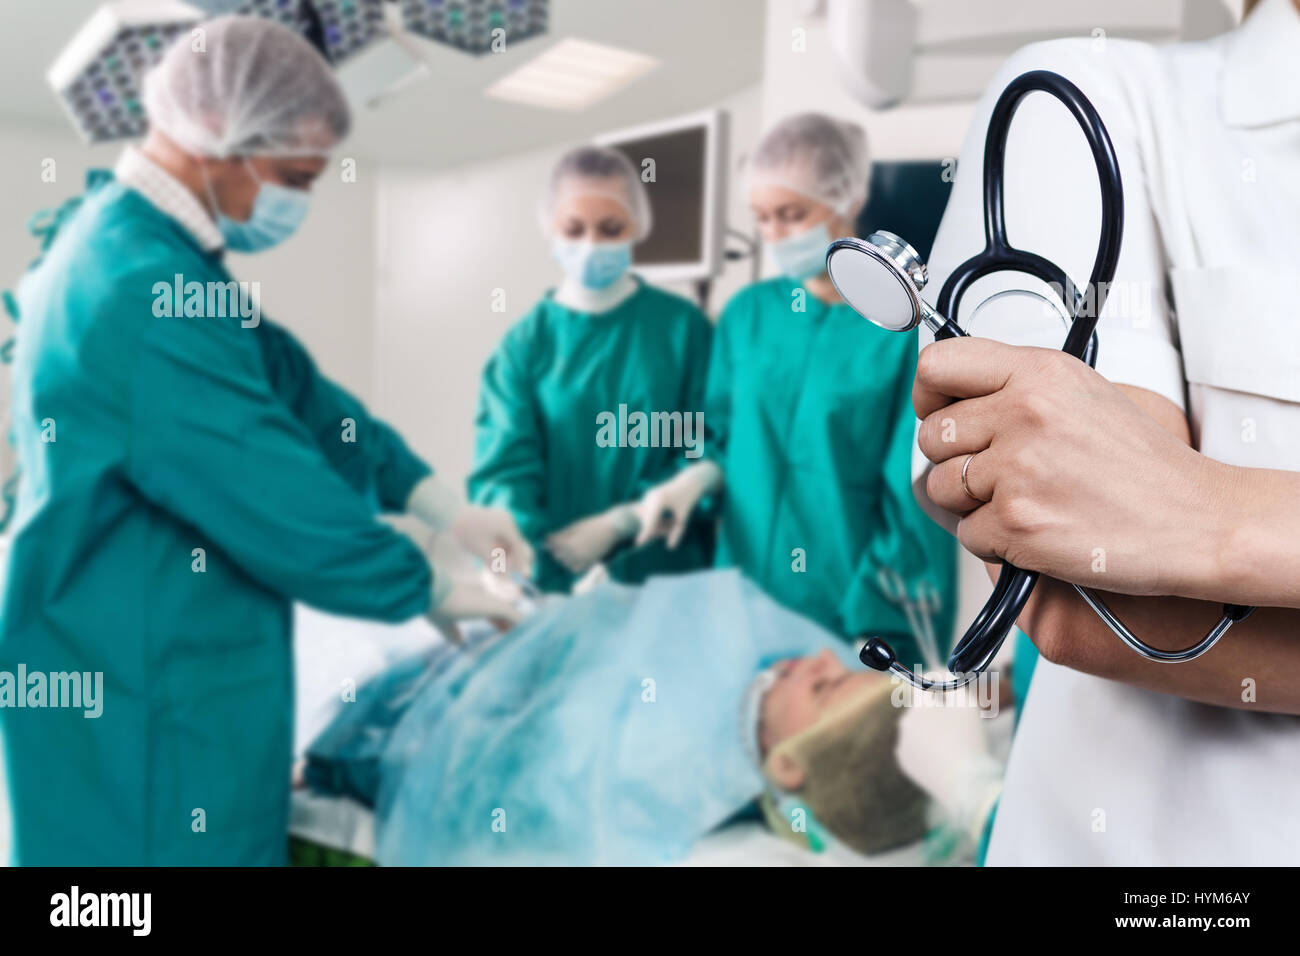 Chirurgen-Team während einer Operation Stockfoto